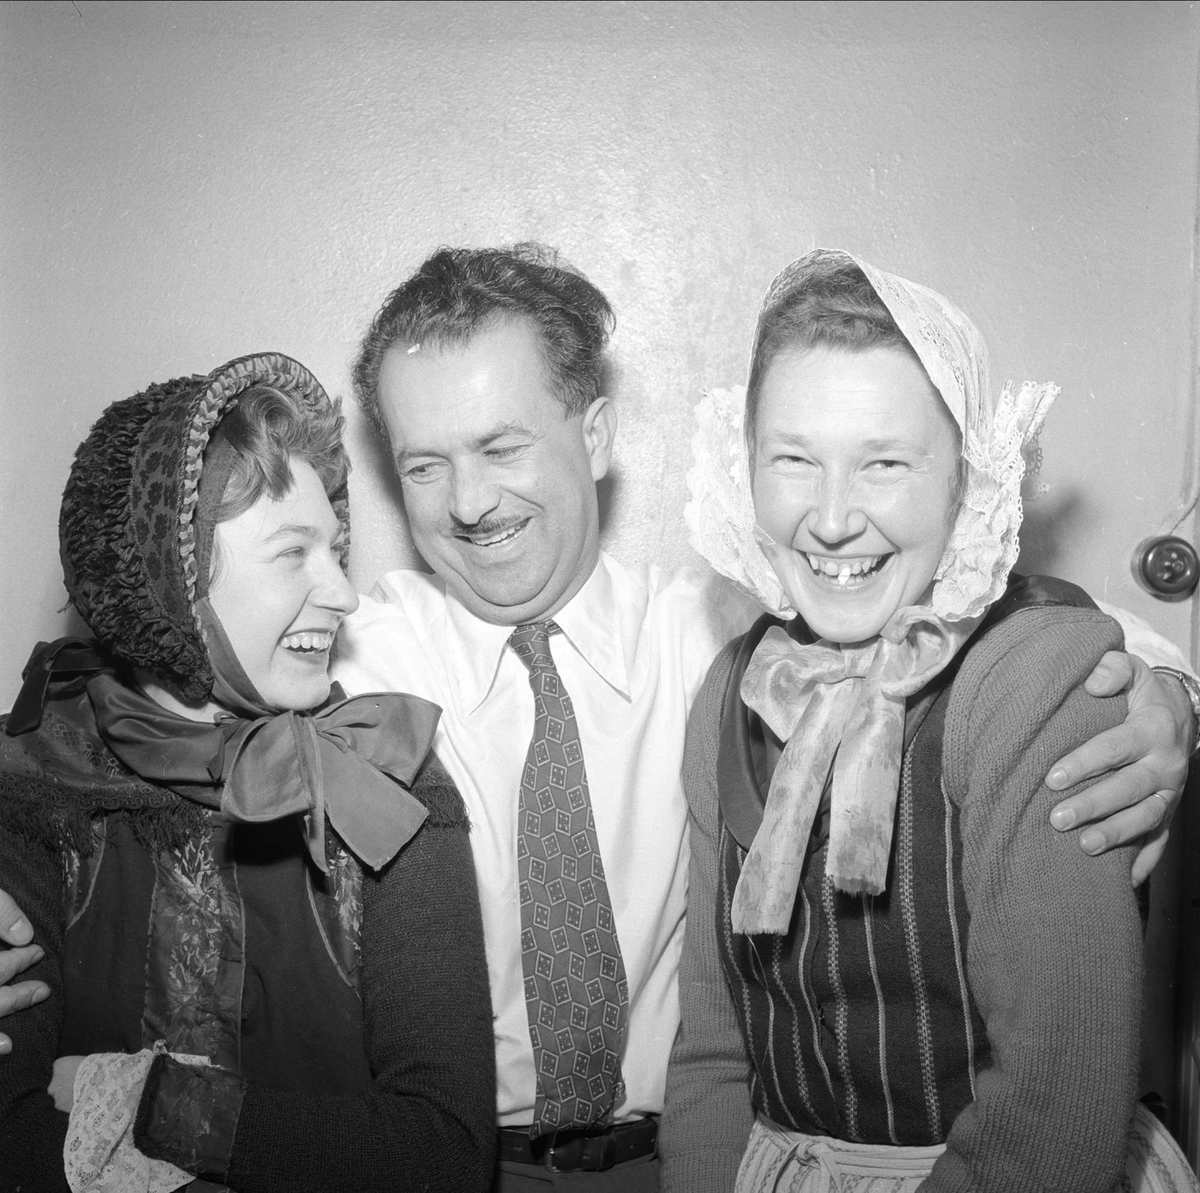 Mann og kvinner i kostymer. Mars 1954. Bygdelag. Teatersalen, ant. fra stykket "Rundreise".